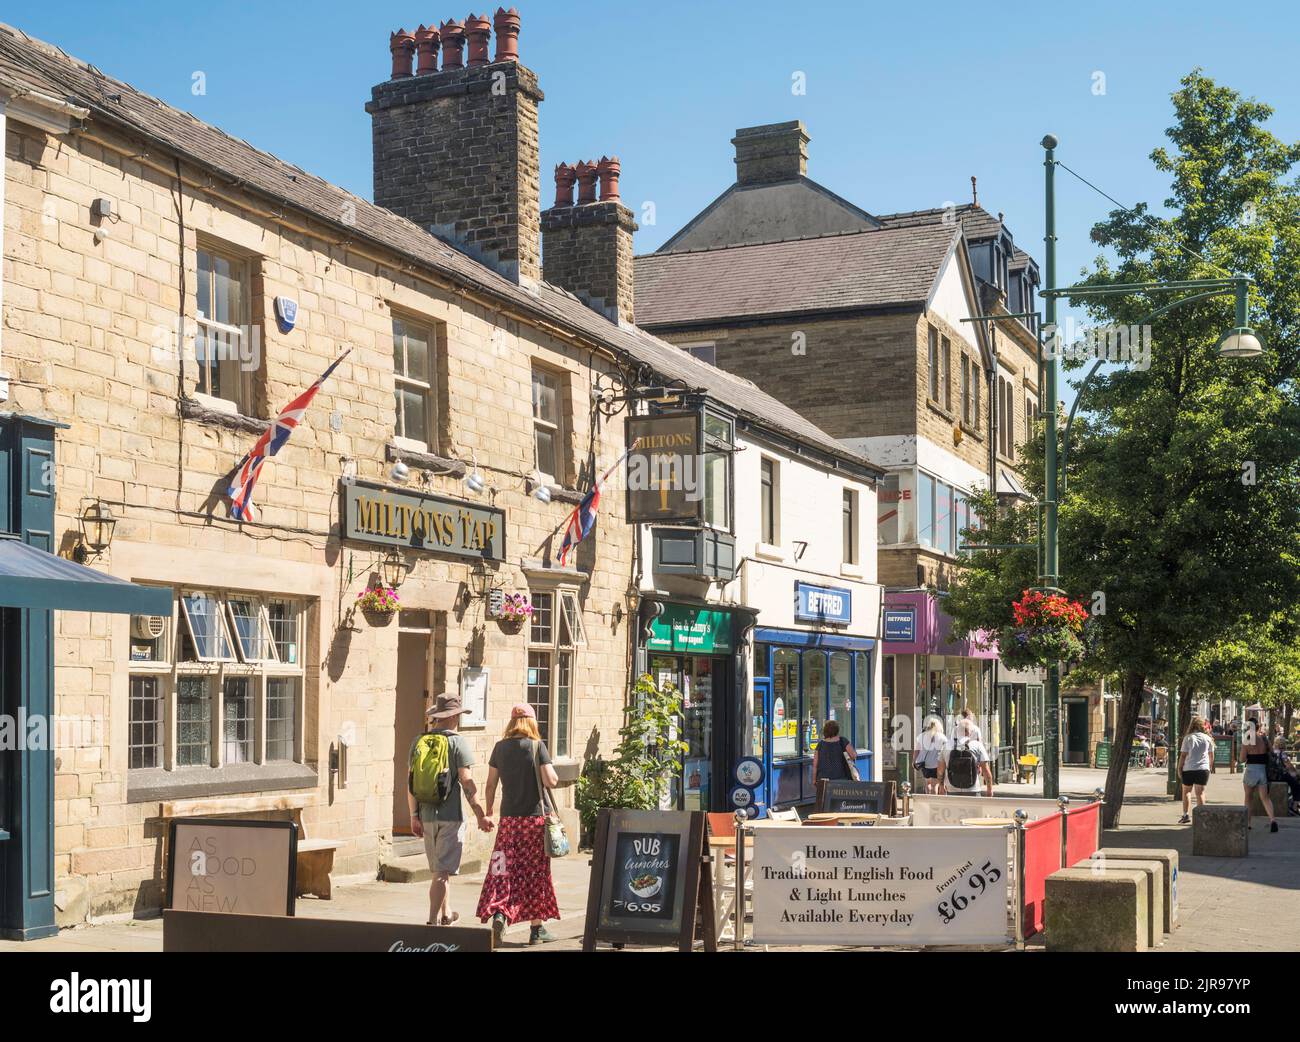 Un couple qui passe devant le pub Miltons Tap dans le centre-ville de Buxton, Derbyshire, Angleterre, Royaume-Uni Banque D'Images